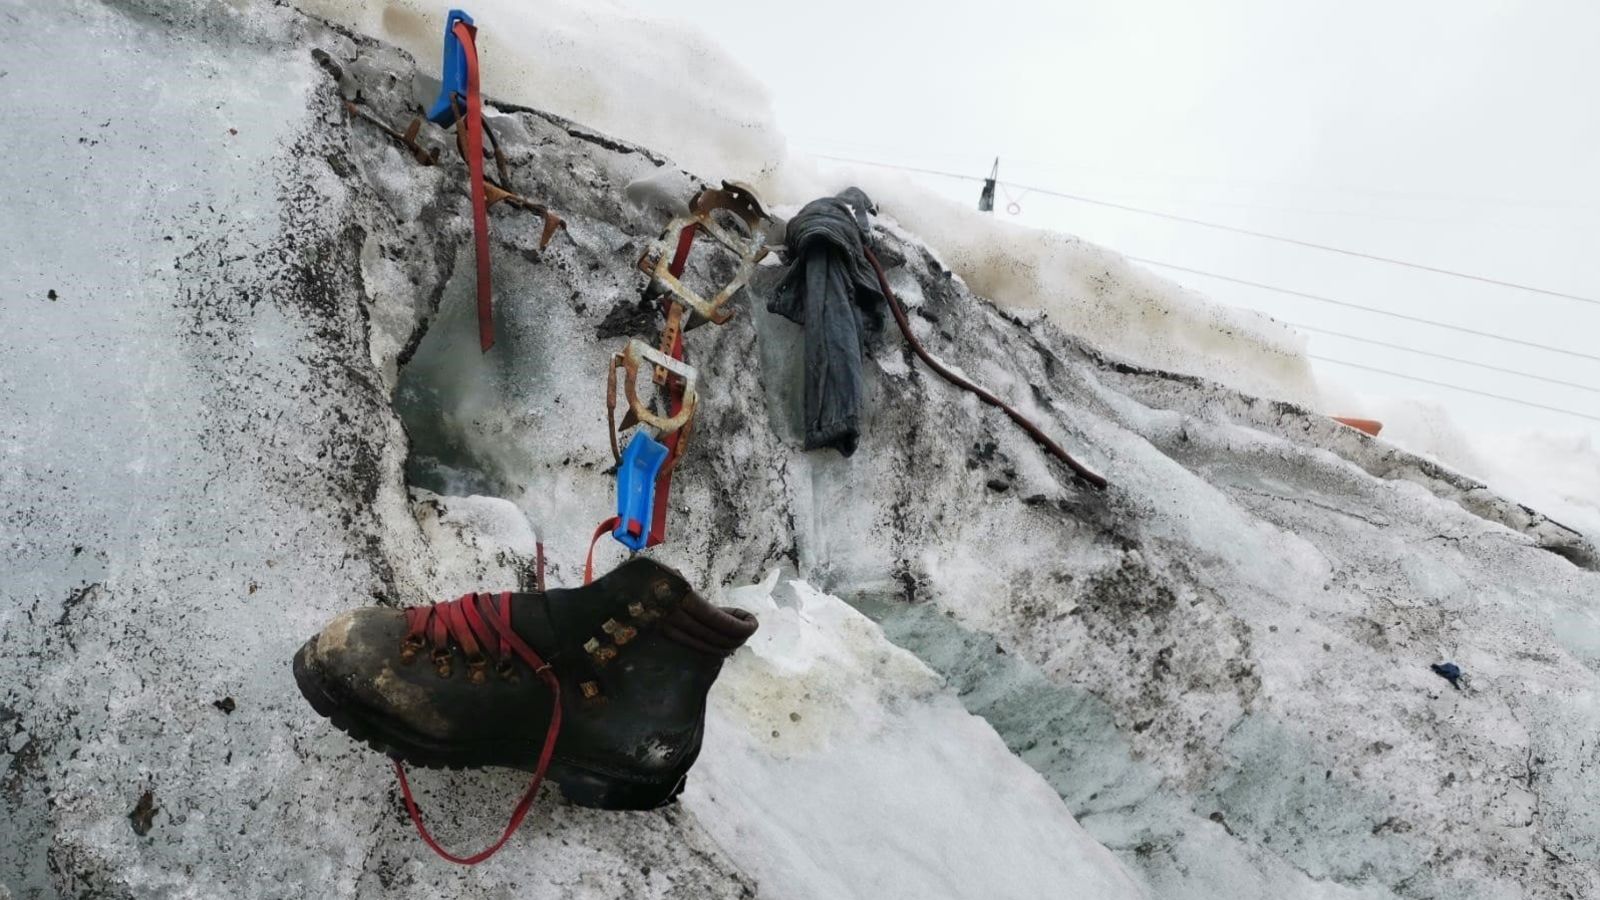 El hielo derretido revela los restos de un escalador alemán perdido en un glaciar en Suiza hace 37 años. (Valais Cantonal Police/Kantonspolizei Wallis)